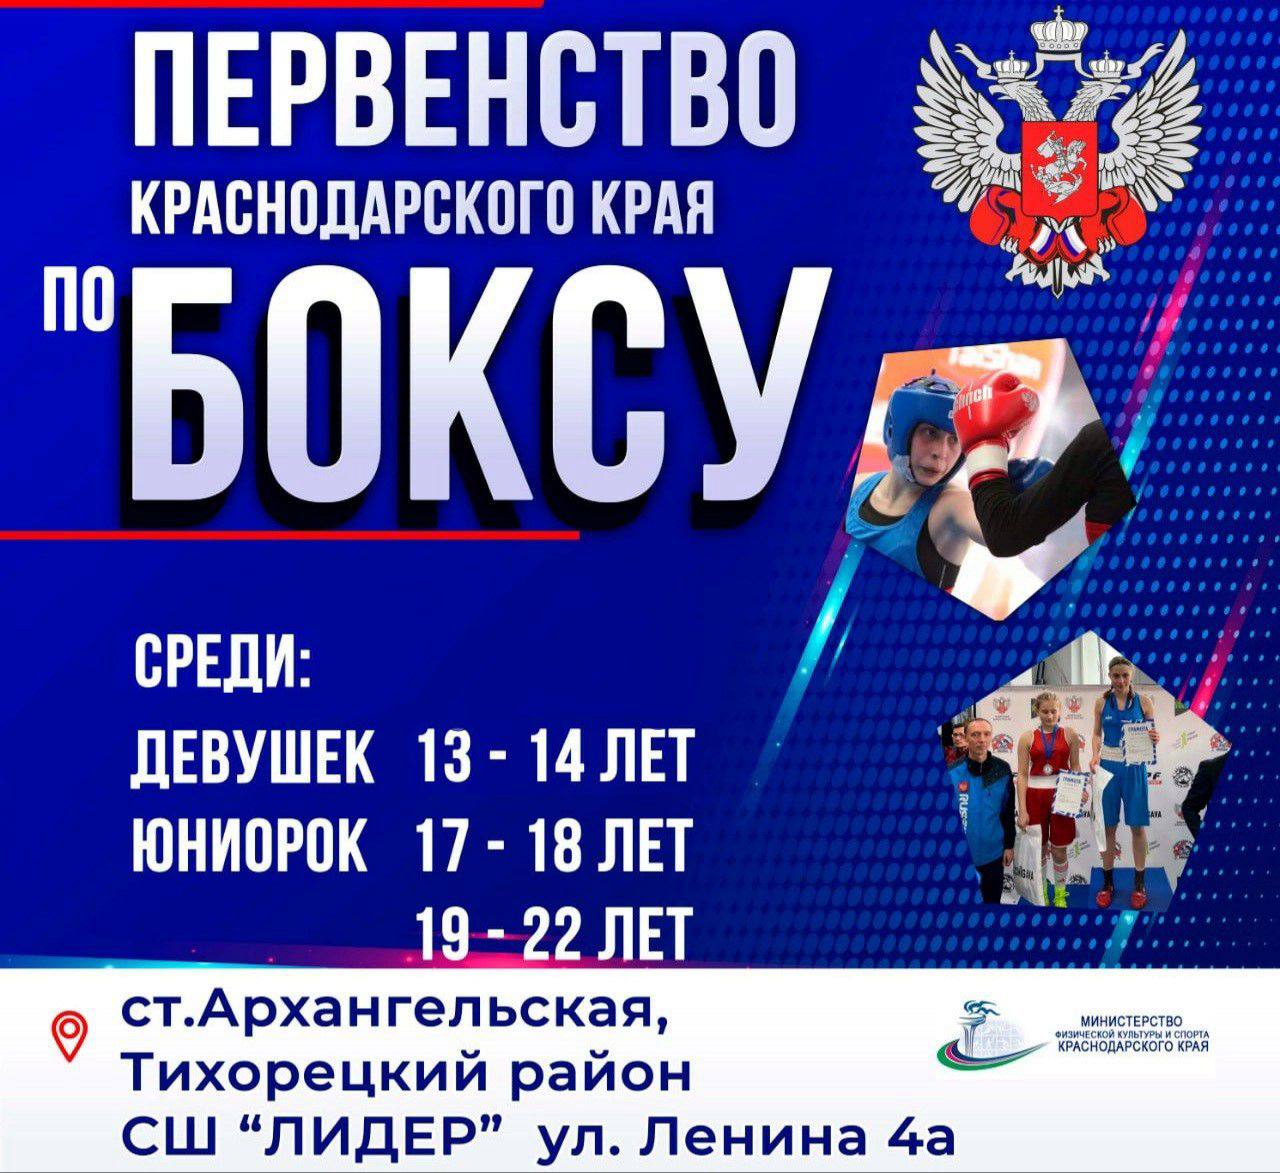 Поздравляем победителей и призеров Первенства Краснодарского края по боксу среди девушек (13-14 лет), юниорок (17-18 лет и 19-22 года)